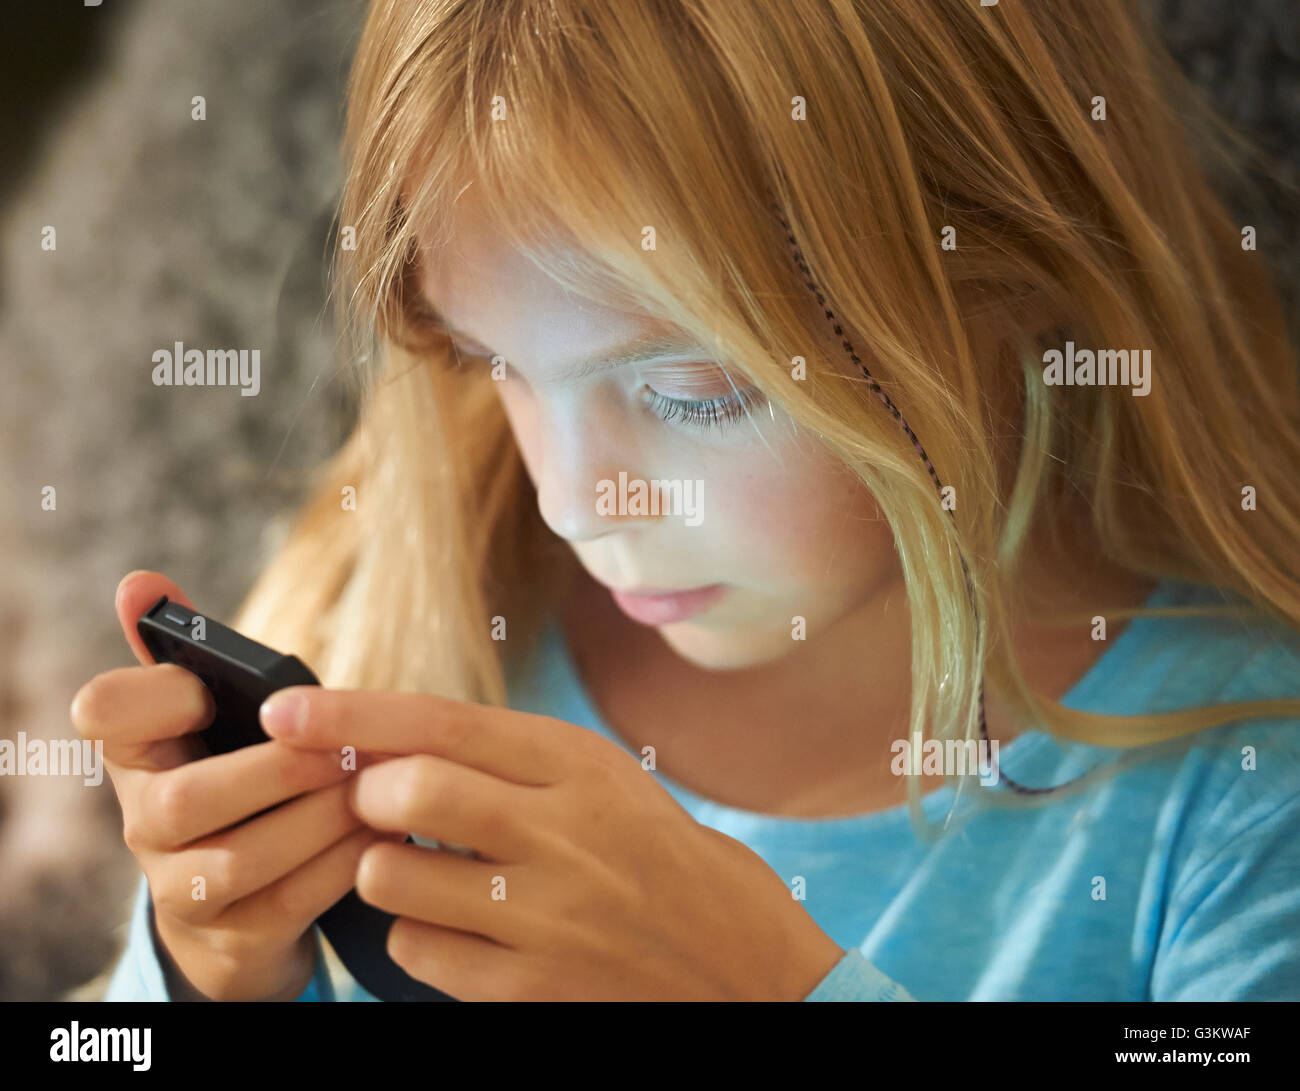 Young girl looking at smartphone, le visage illuminé par les bougies de l'écran Banque D'Images